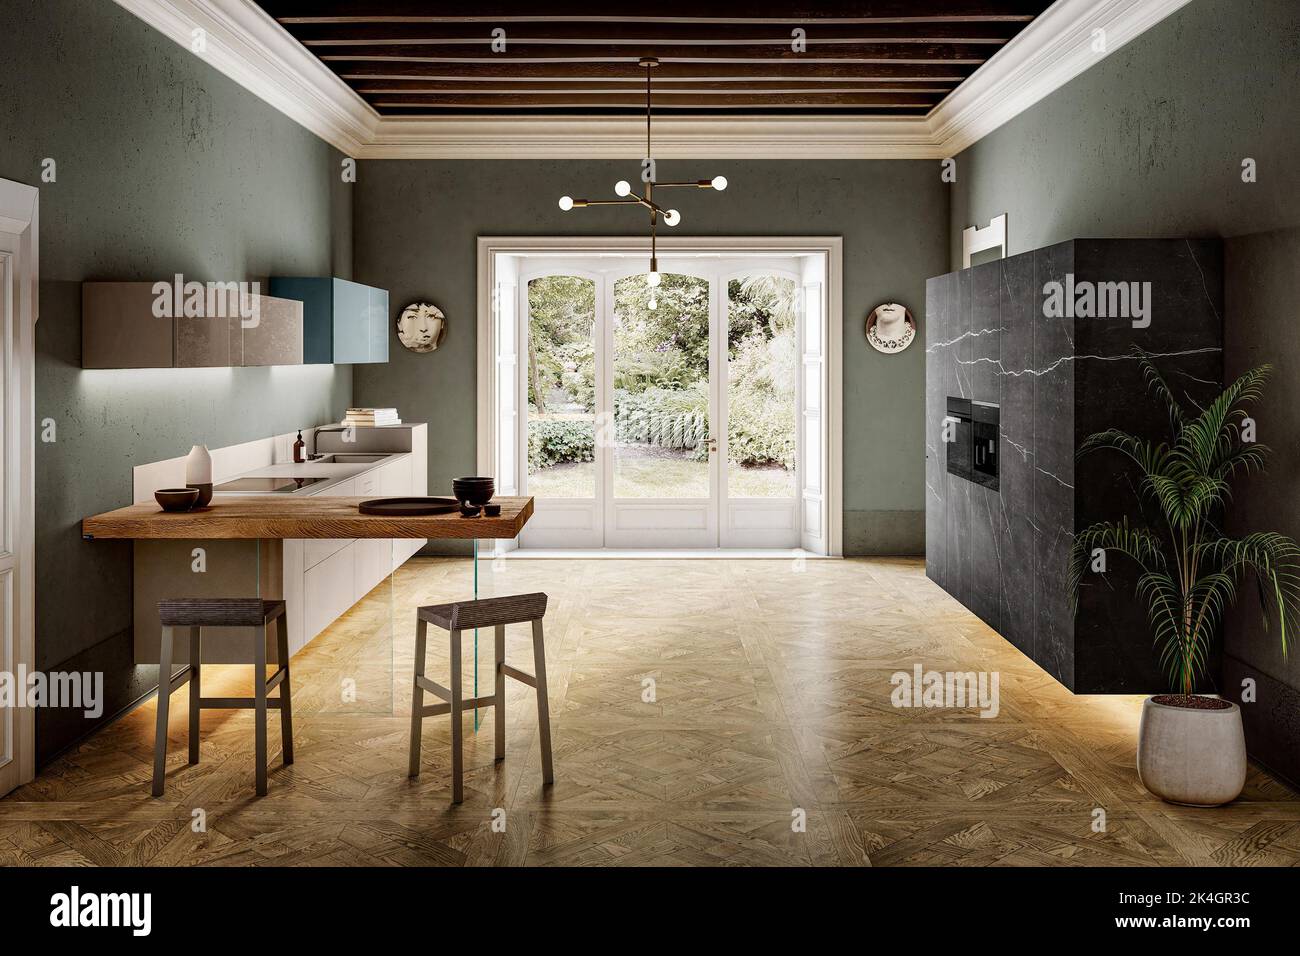 Intérieur moderne de style kithcen de luxe dans un style minimaliste Banque D'Images